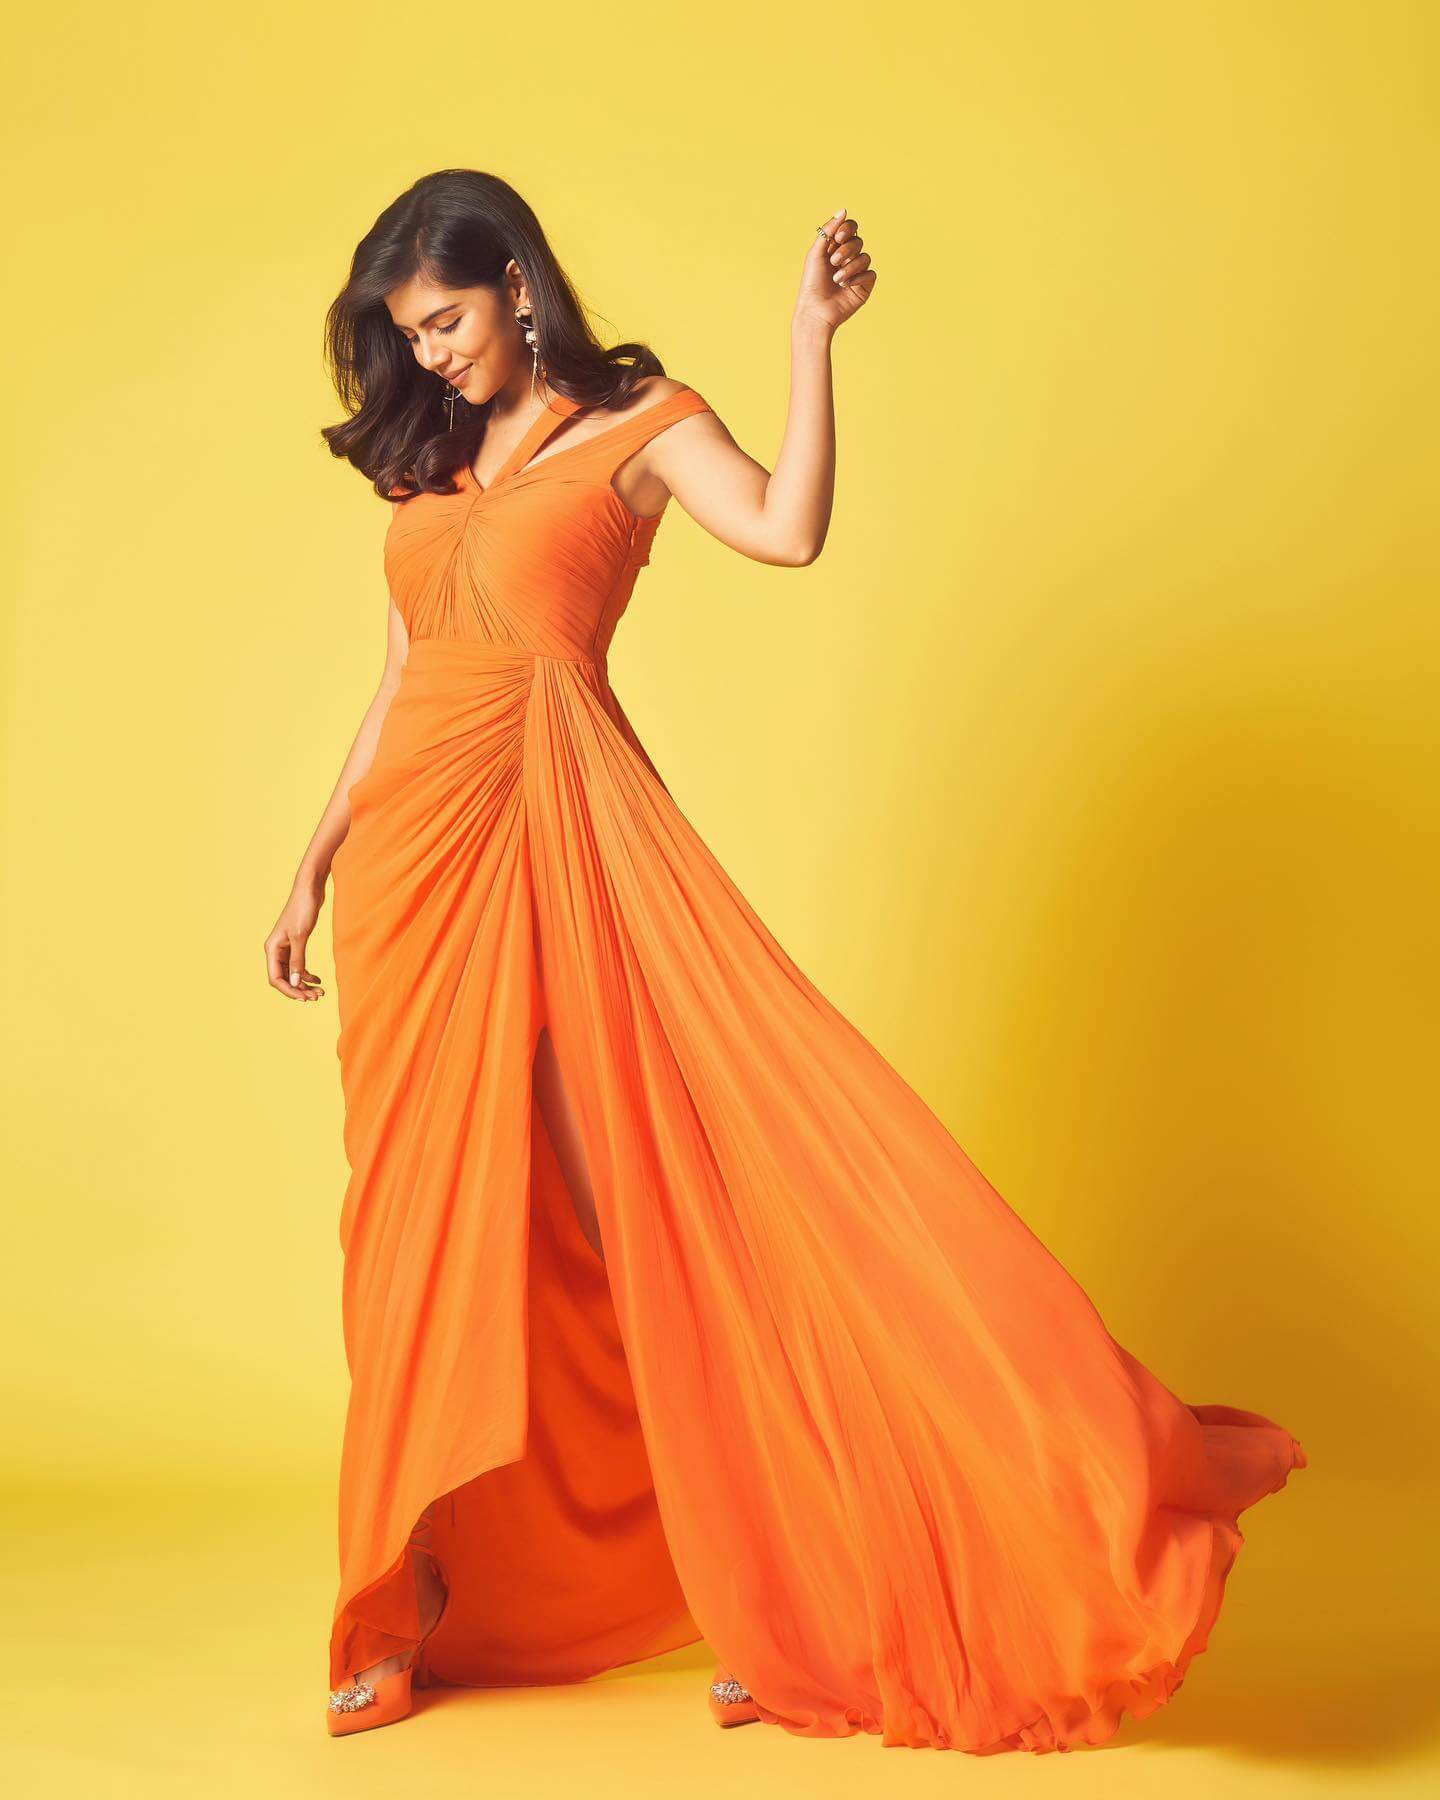 Kalyani Priyadarshan In Orange Embellished Draped Couture High Slit Gown